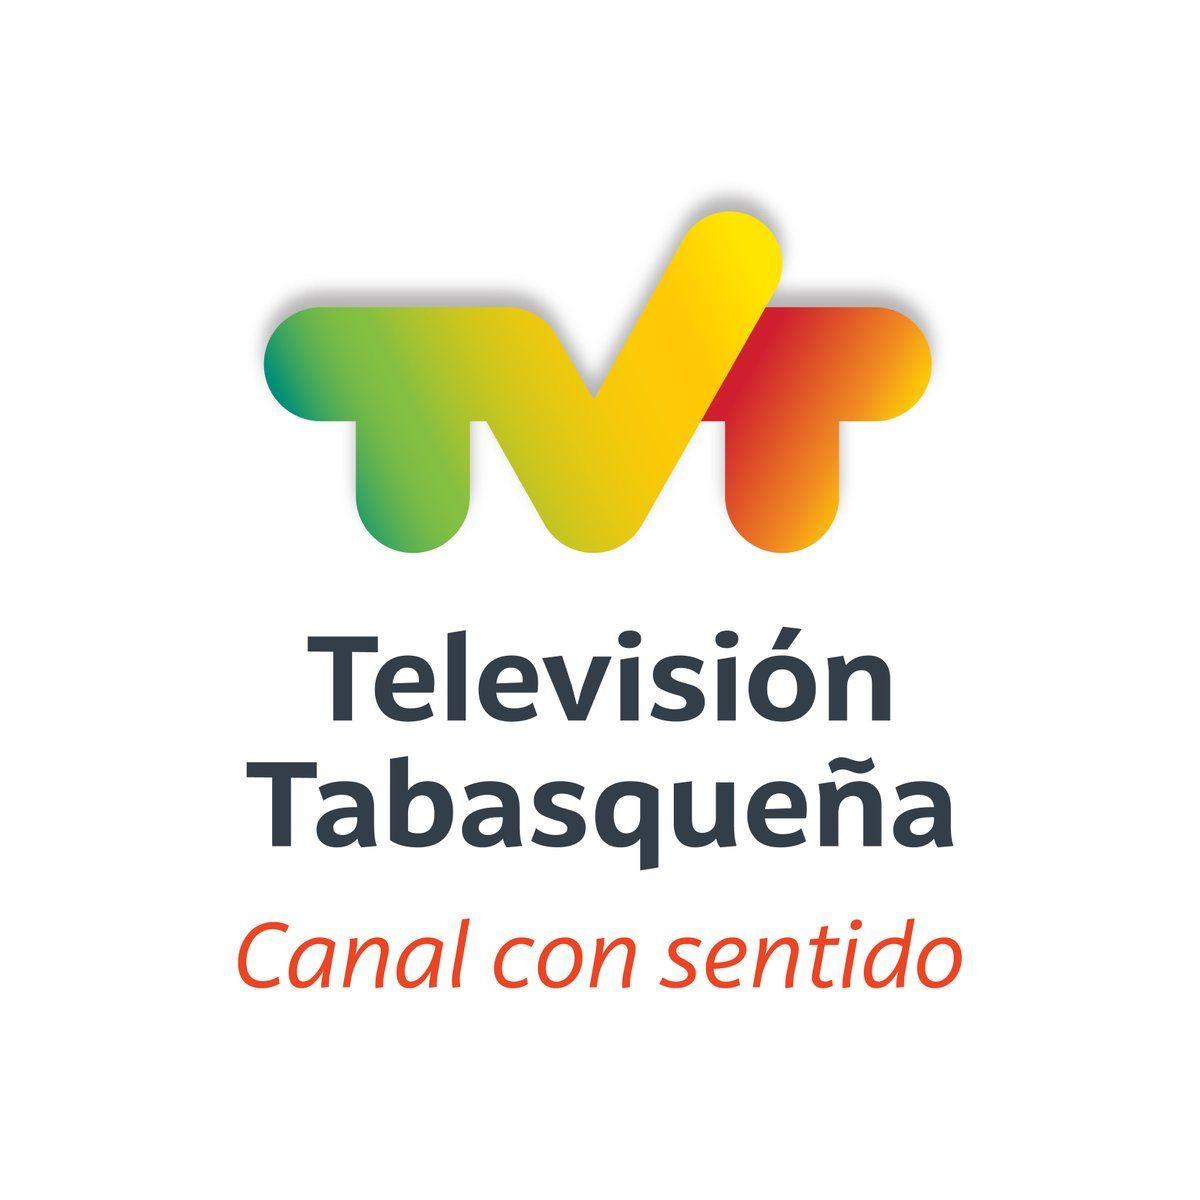 TVT Logo - Presentan la nueva imagen de CORAT y TVT